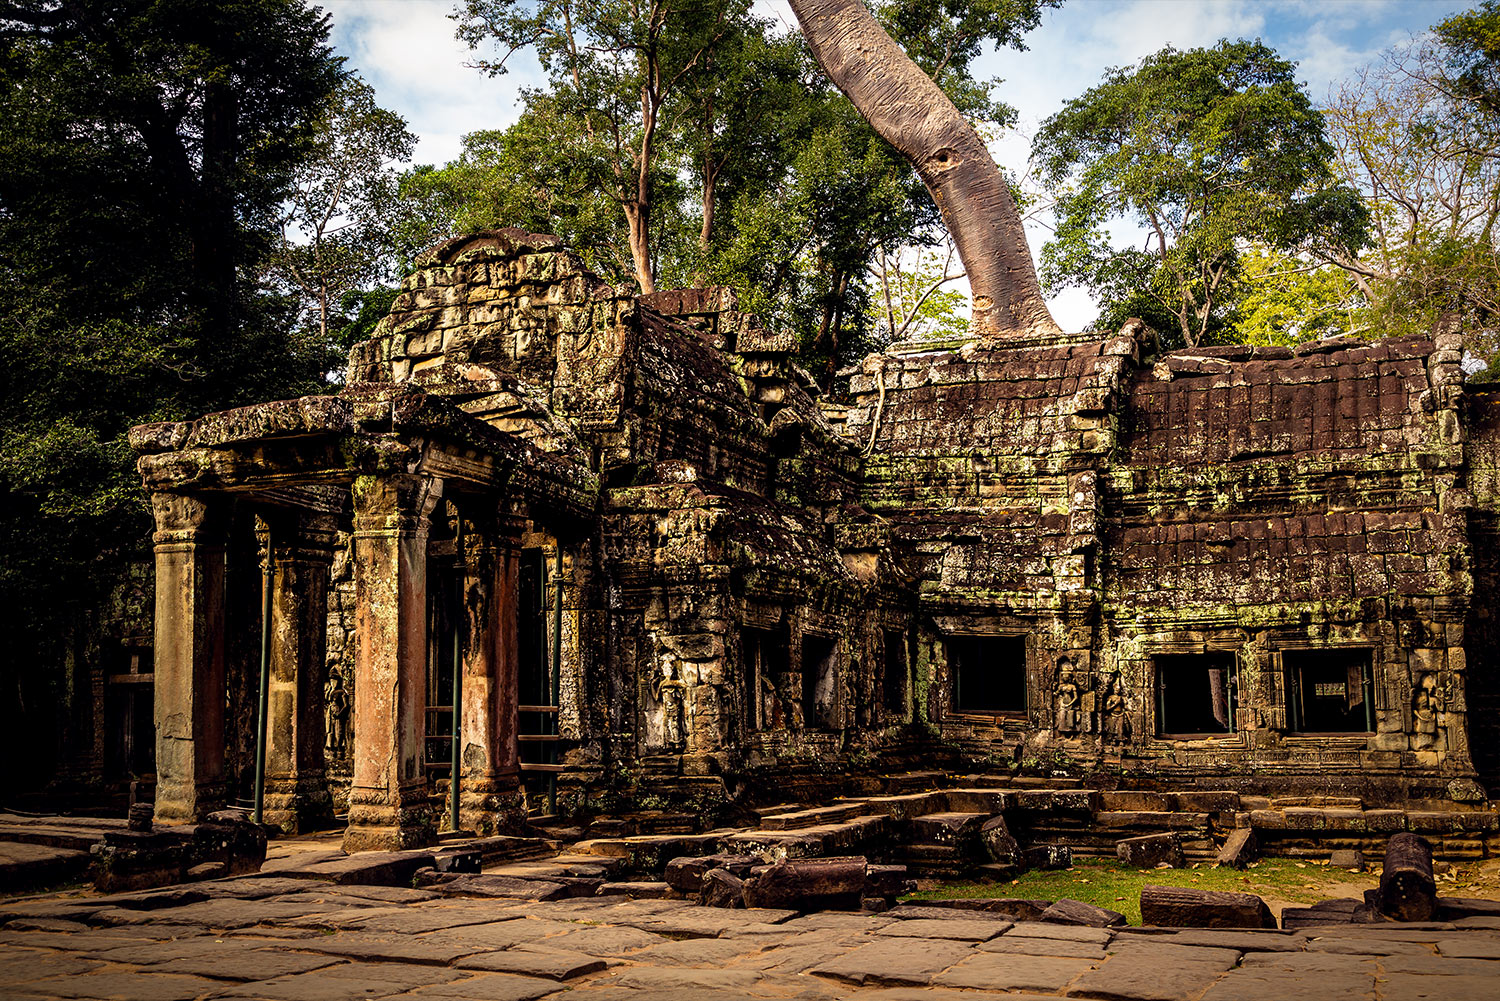 Cambodia school trip - Temple Ruins